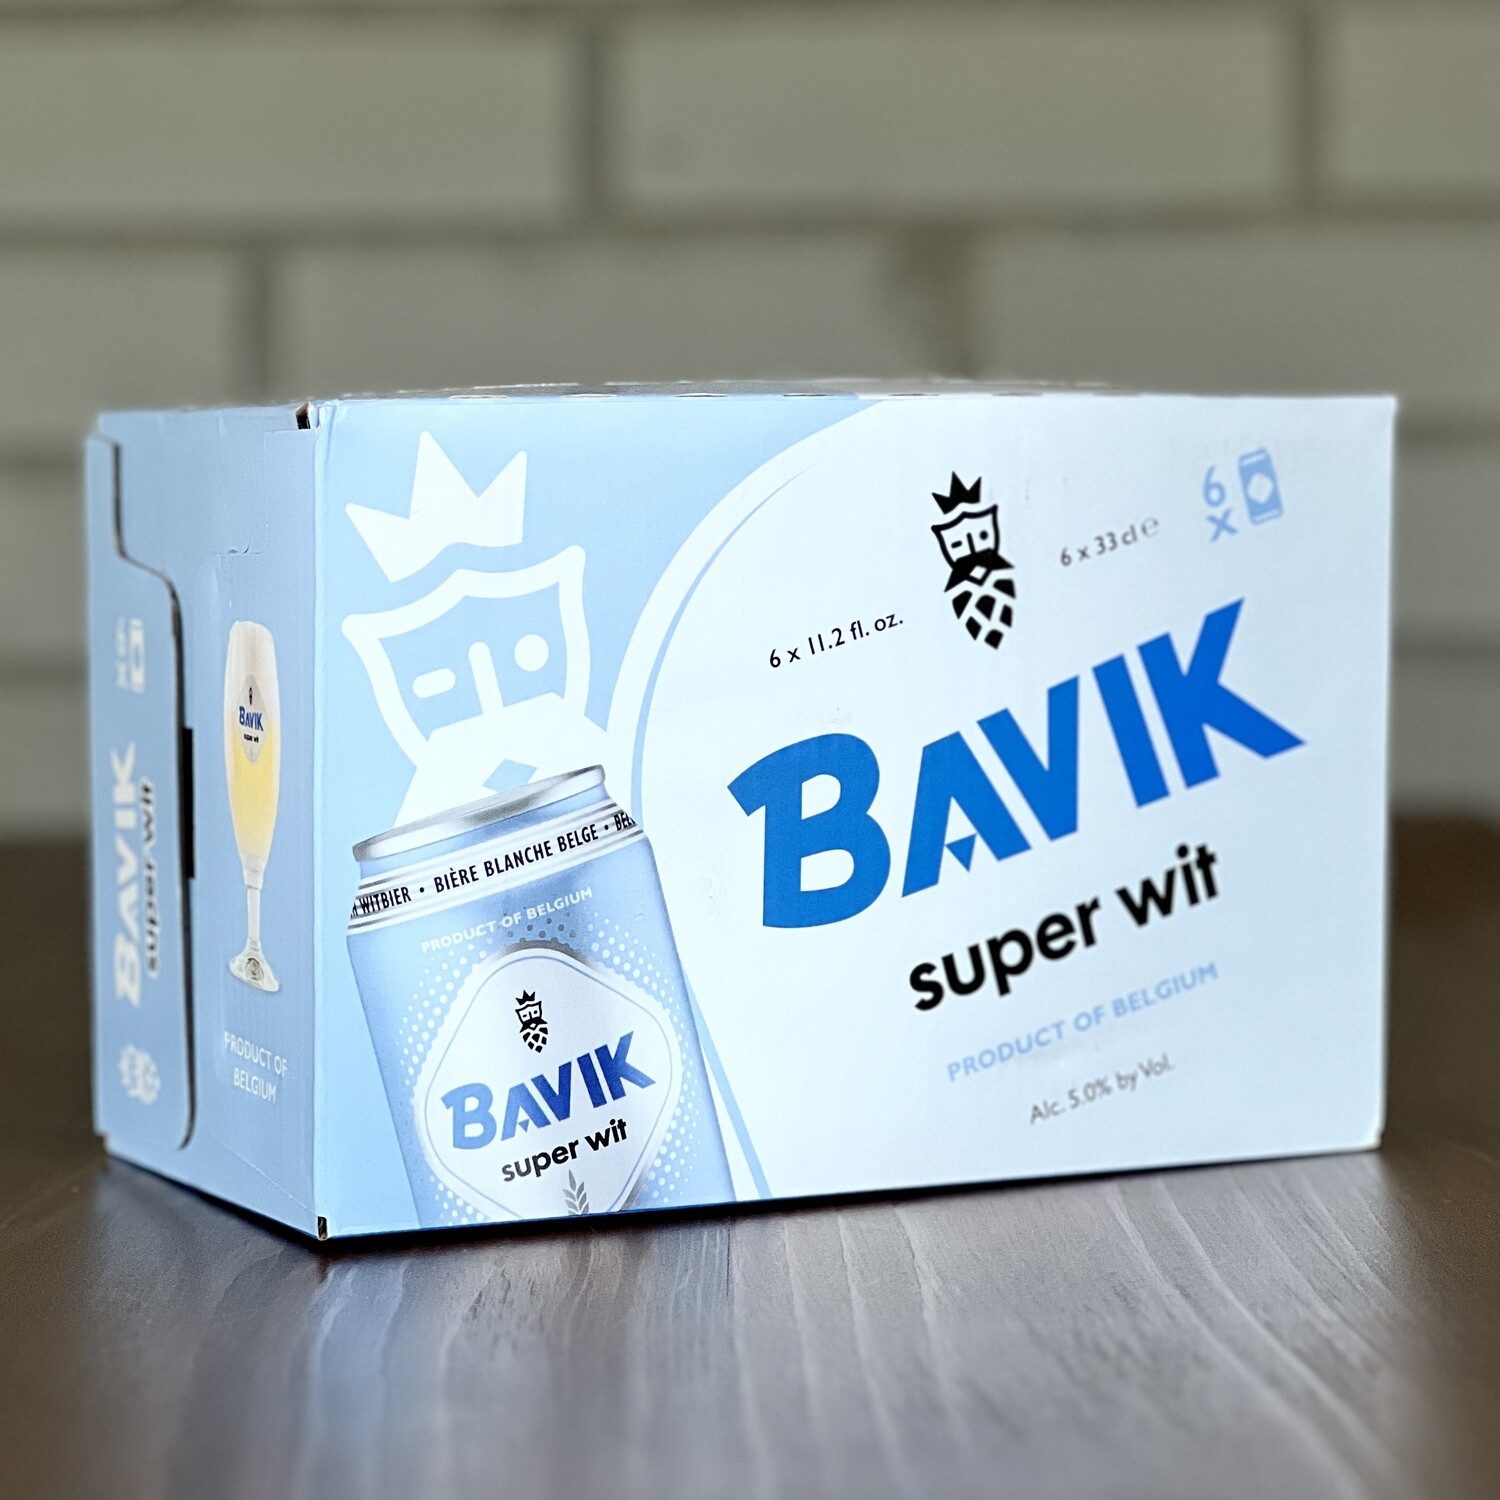 Bavik Super Wit (6pk)